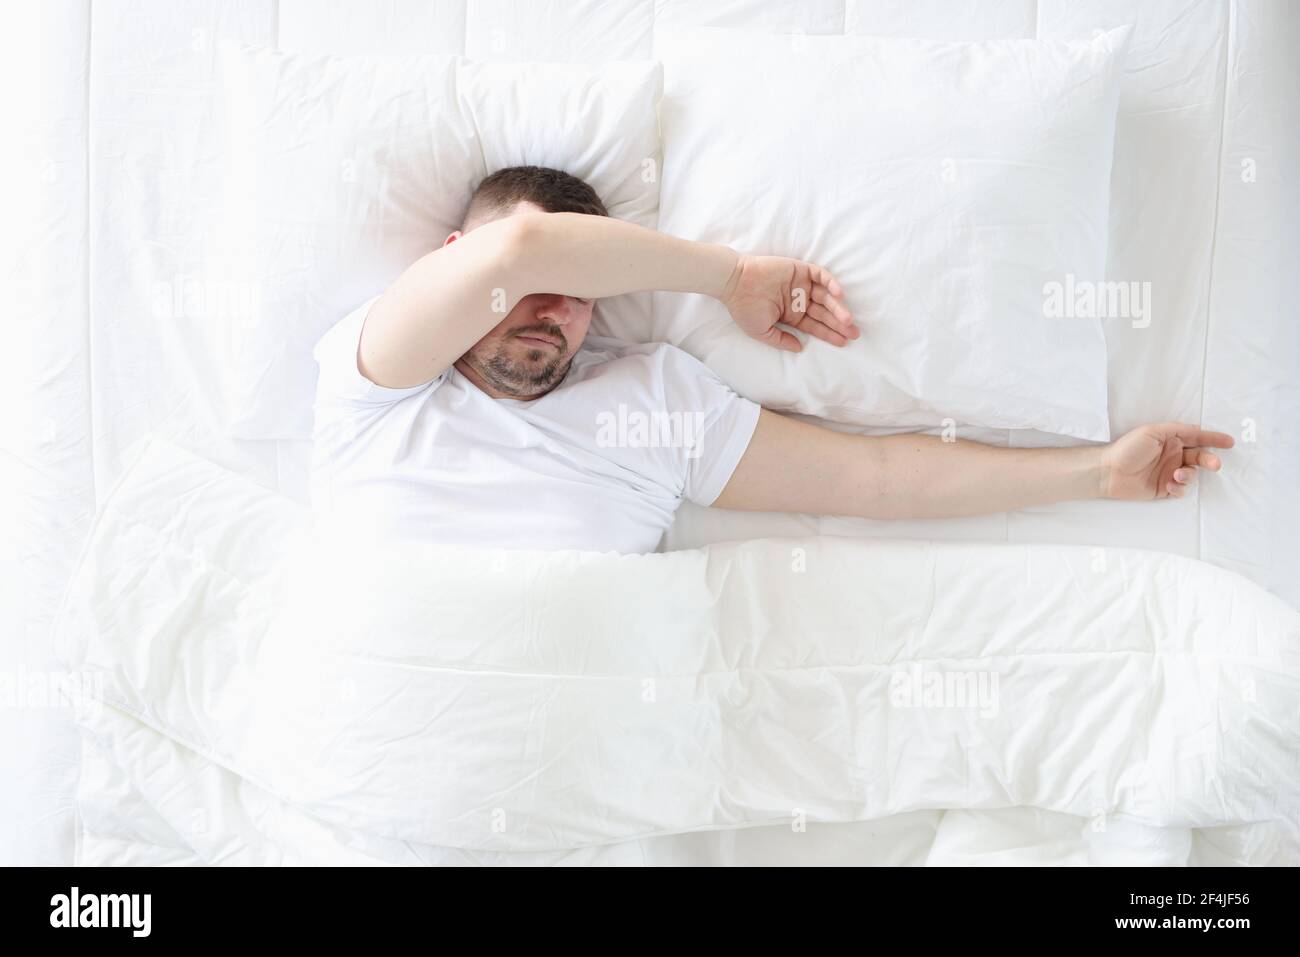 Un homme adulte dort dans la chambre sur un grand lit Banque D'Images